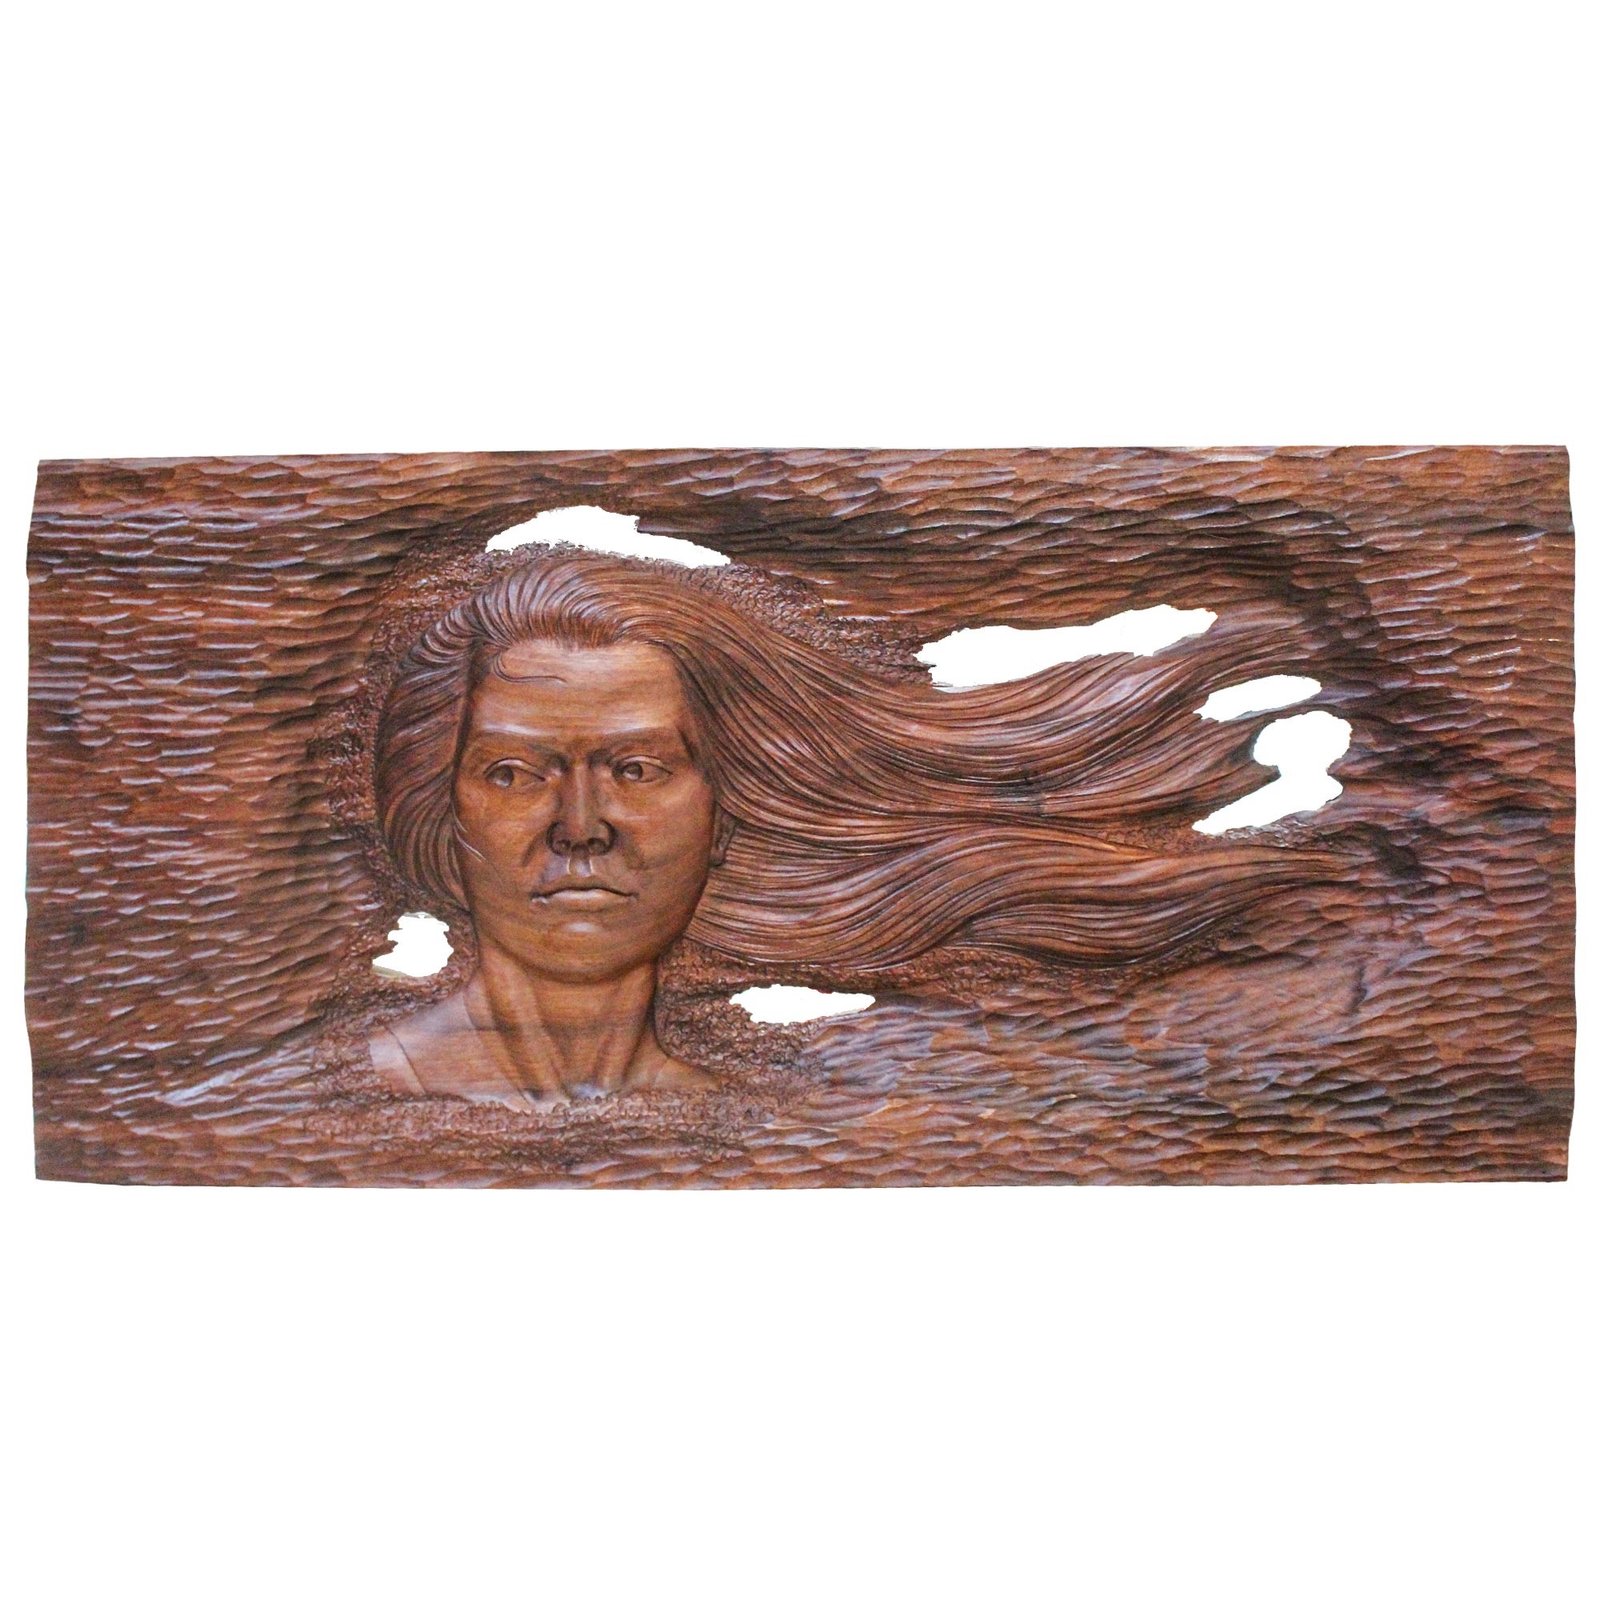 Quadro de escultura em madeira artesanal afson Modelo, artesanal Escultura em madeira, venda Escultura em madeira artesanal, tradicional Escultura em madeira artesanal